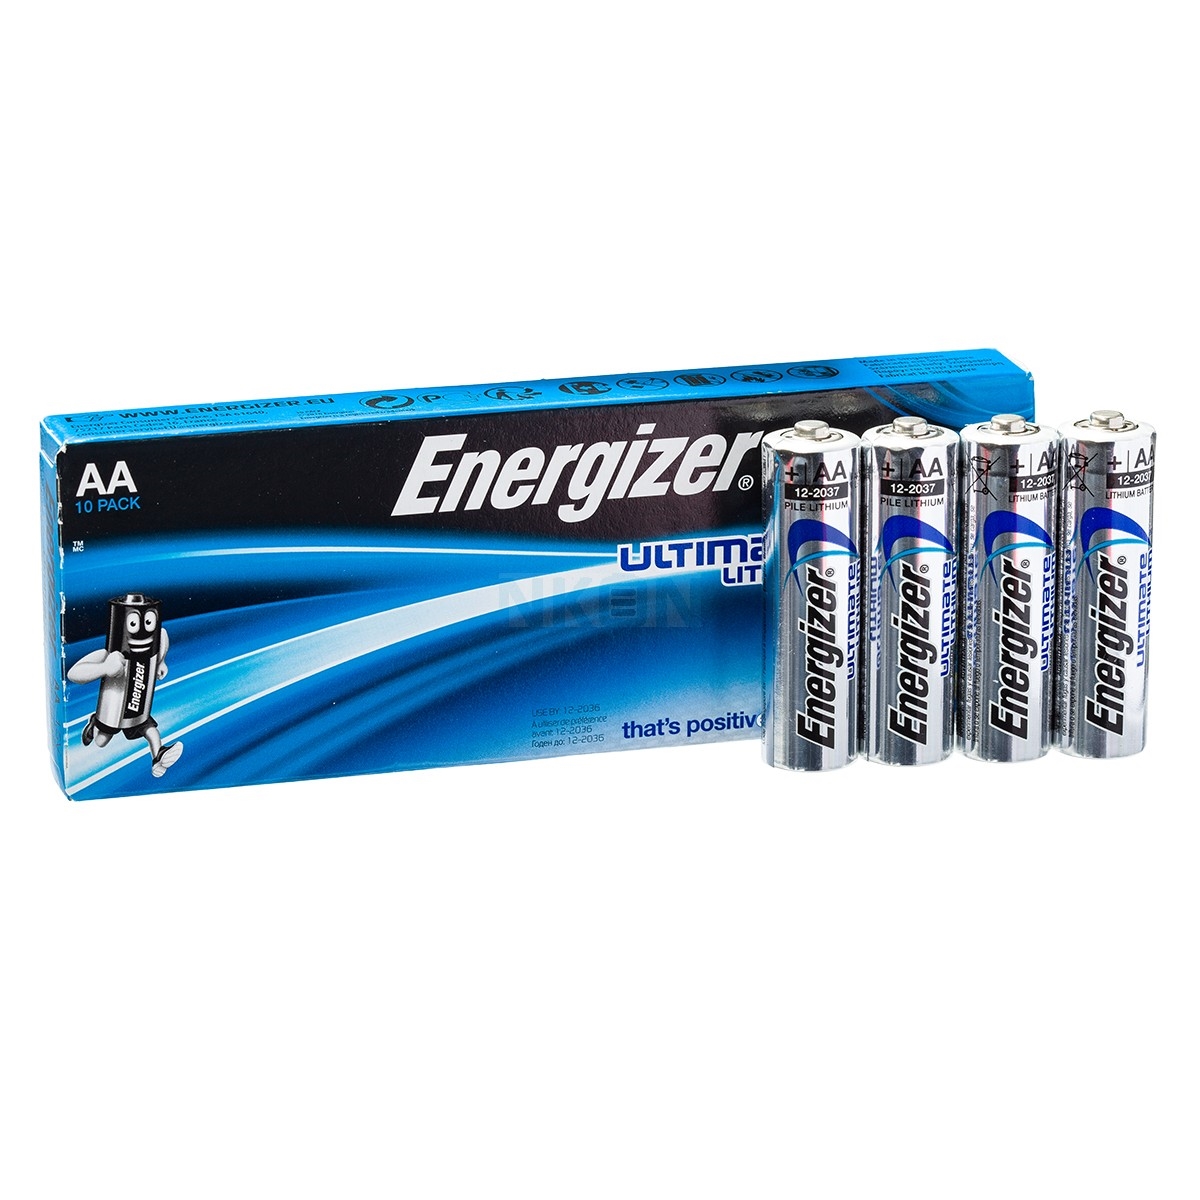 Energizer lithium batteri10 stk.